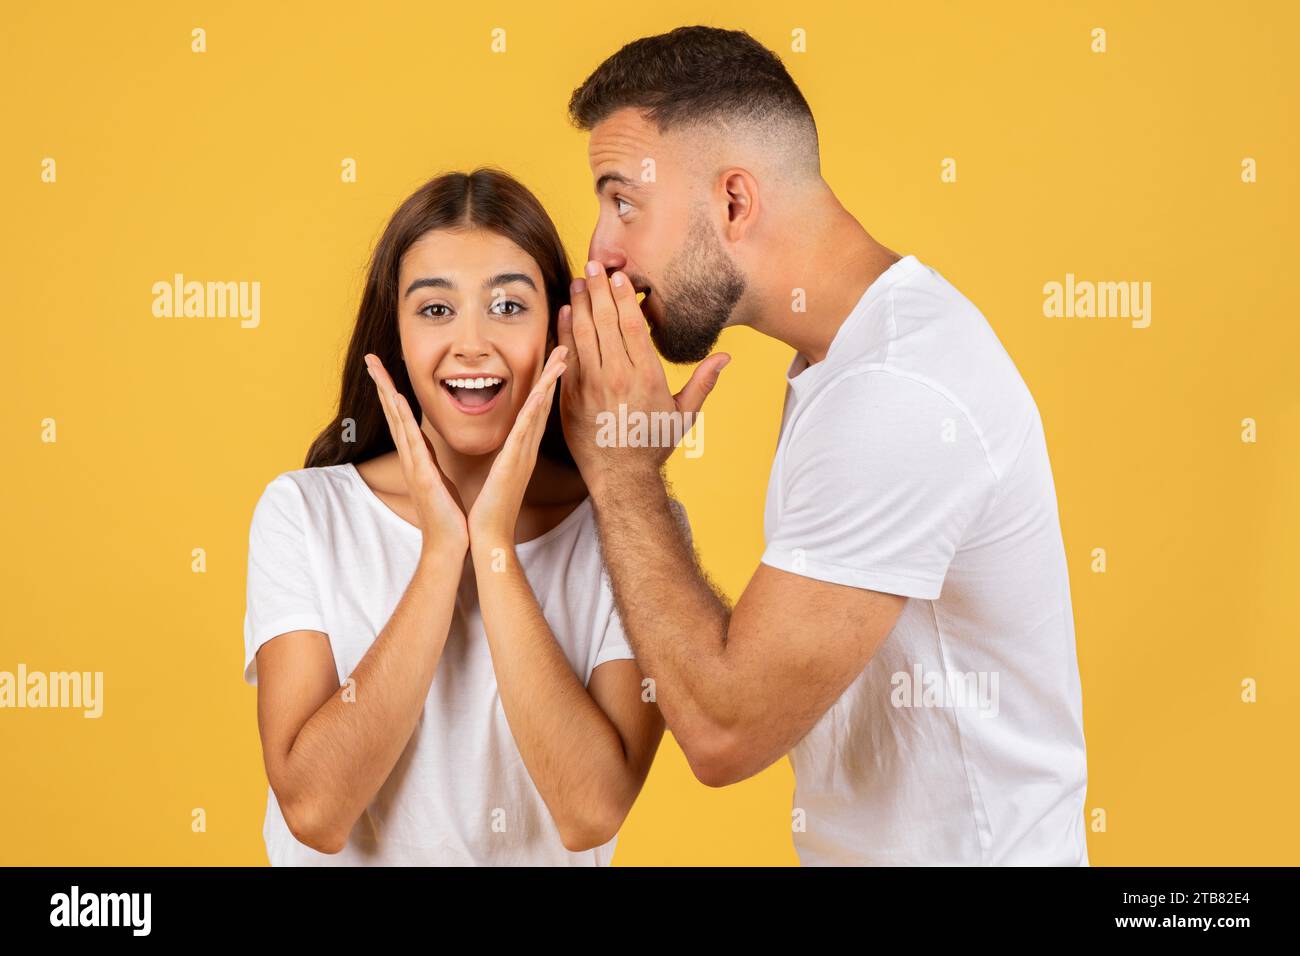 Heureux jeune homme européen en t-shirt blanc murmure à l'oreille de dame surprise secret Banque D'Images